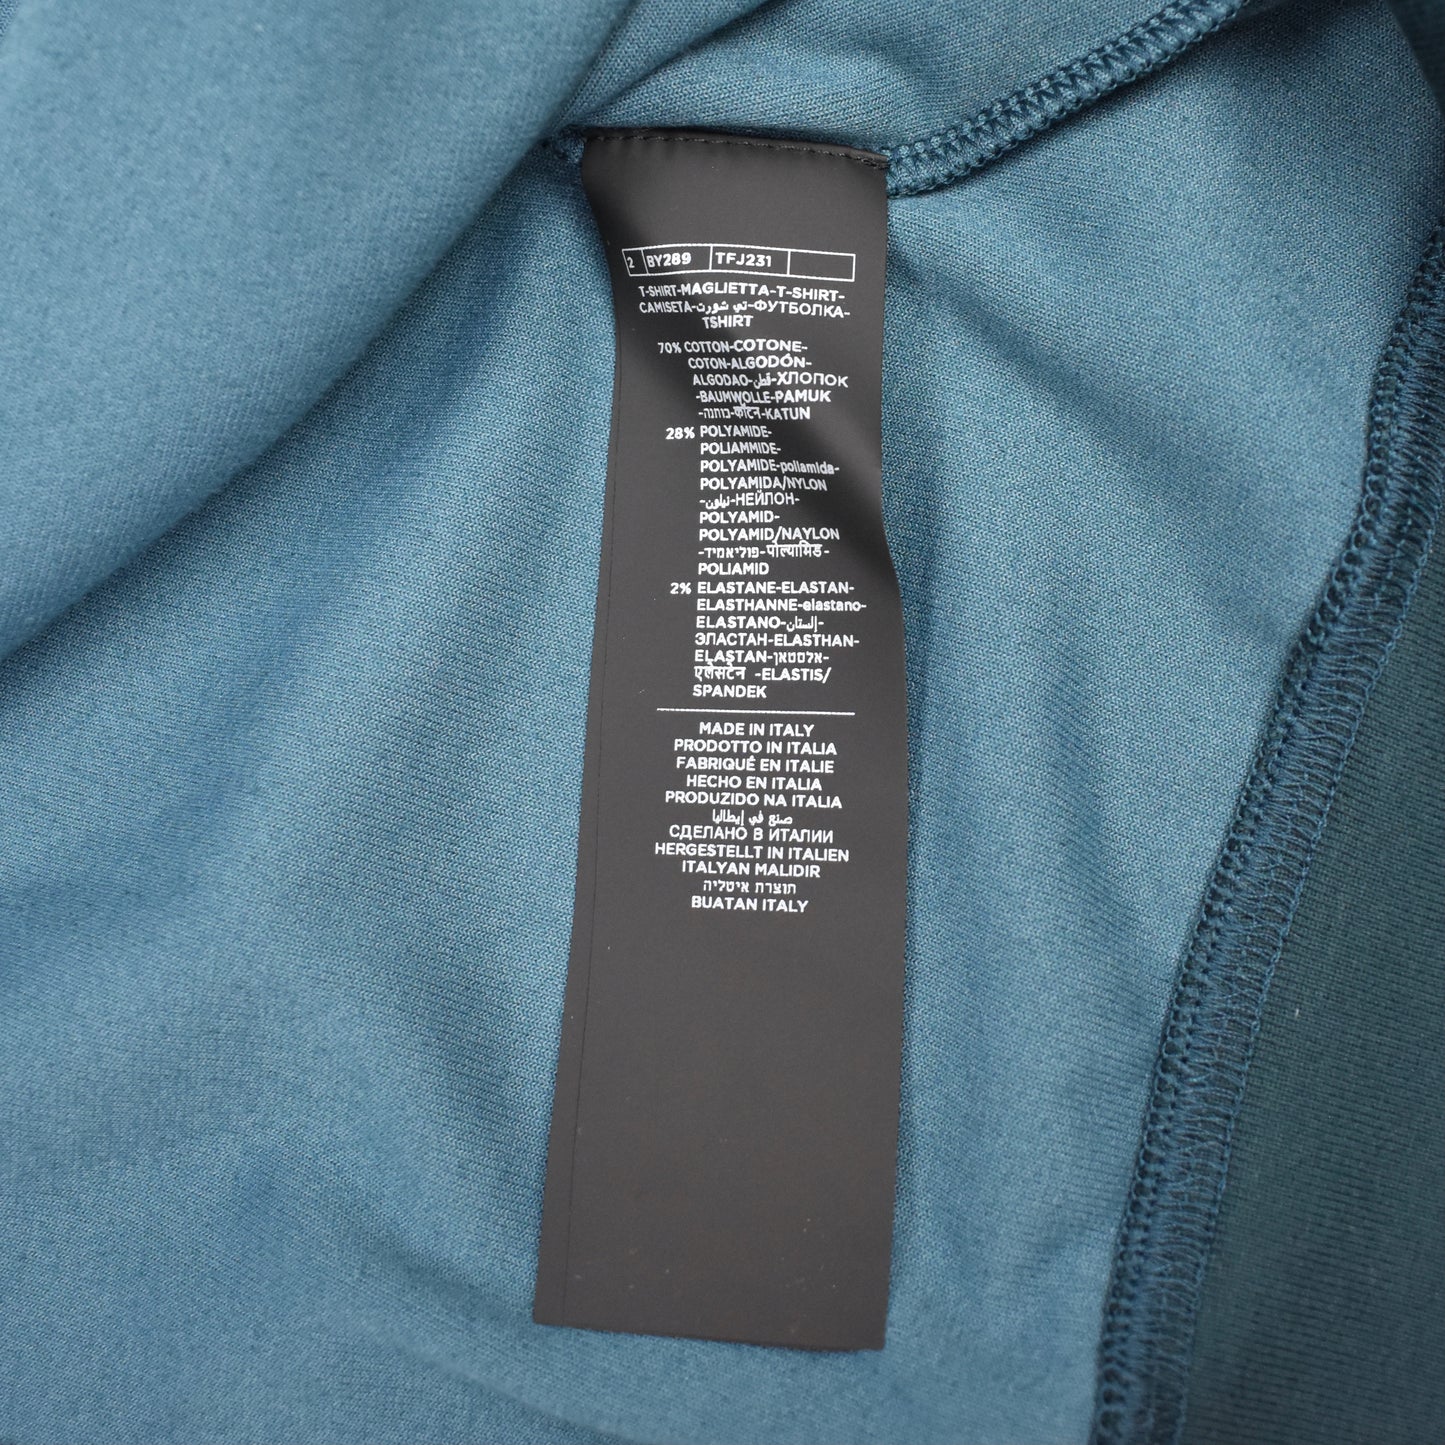 Tom Ford - Teal Blue Velour Track Jacket